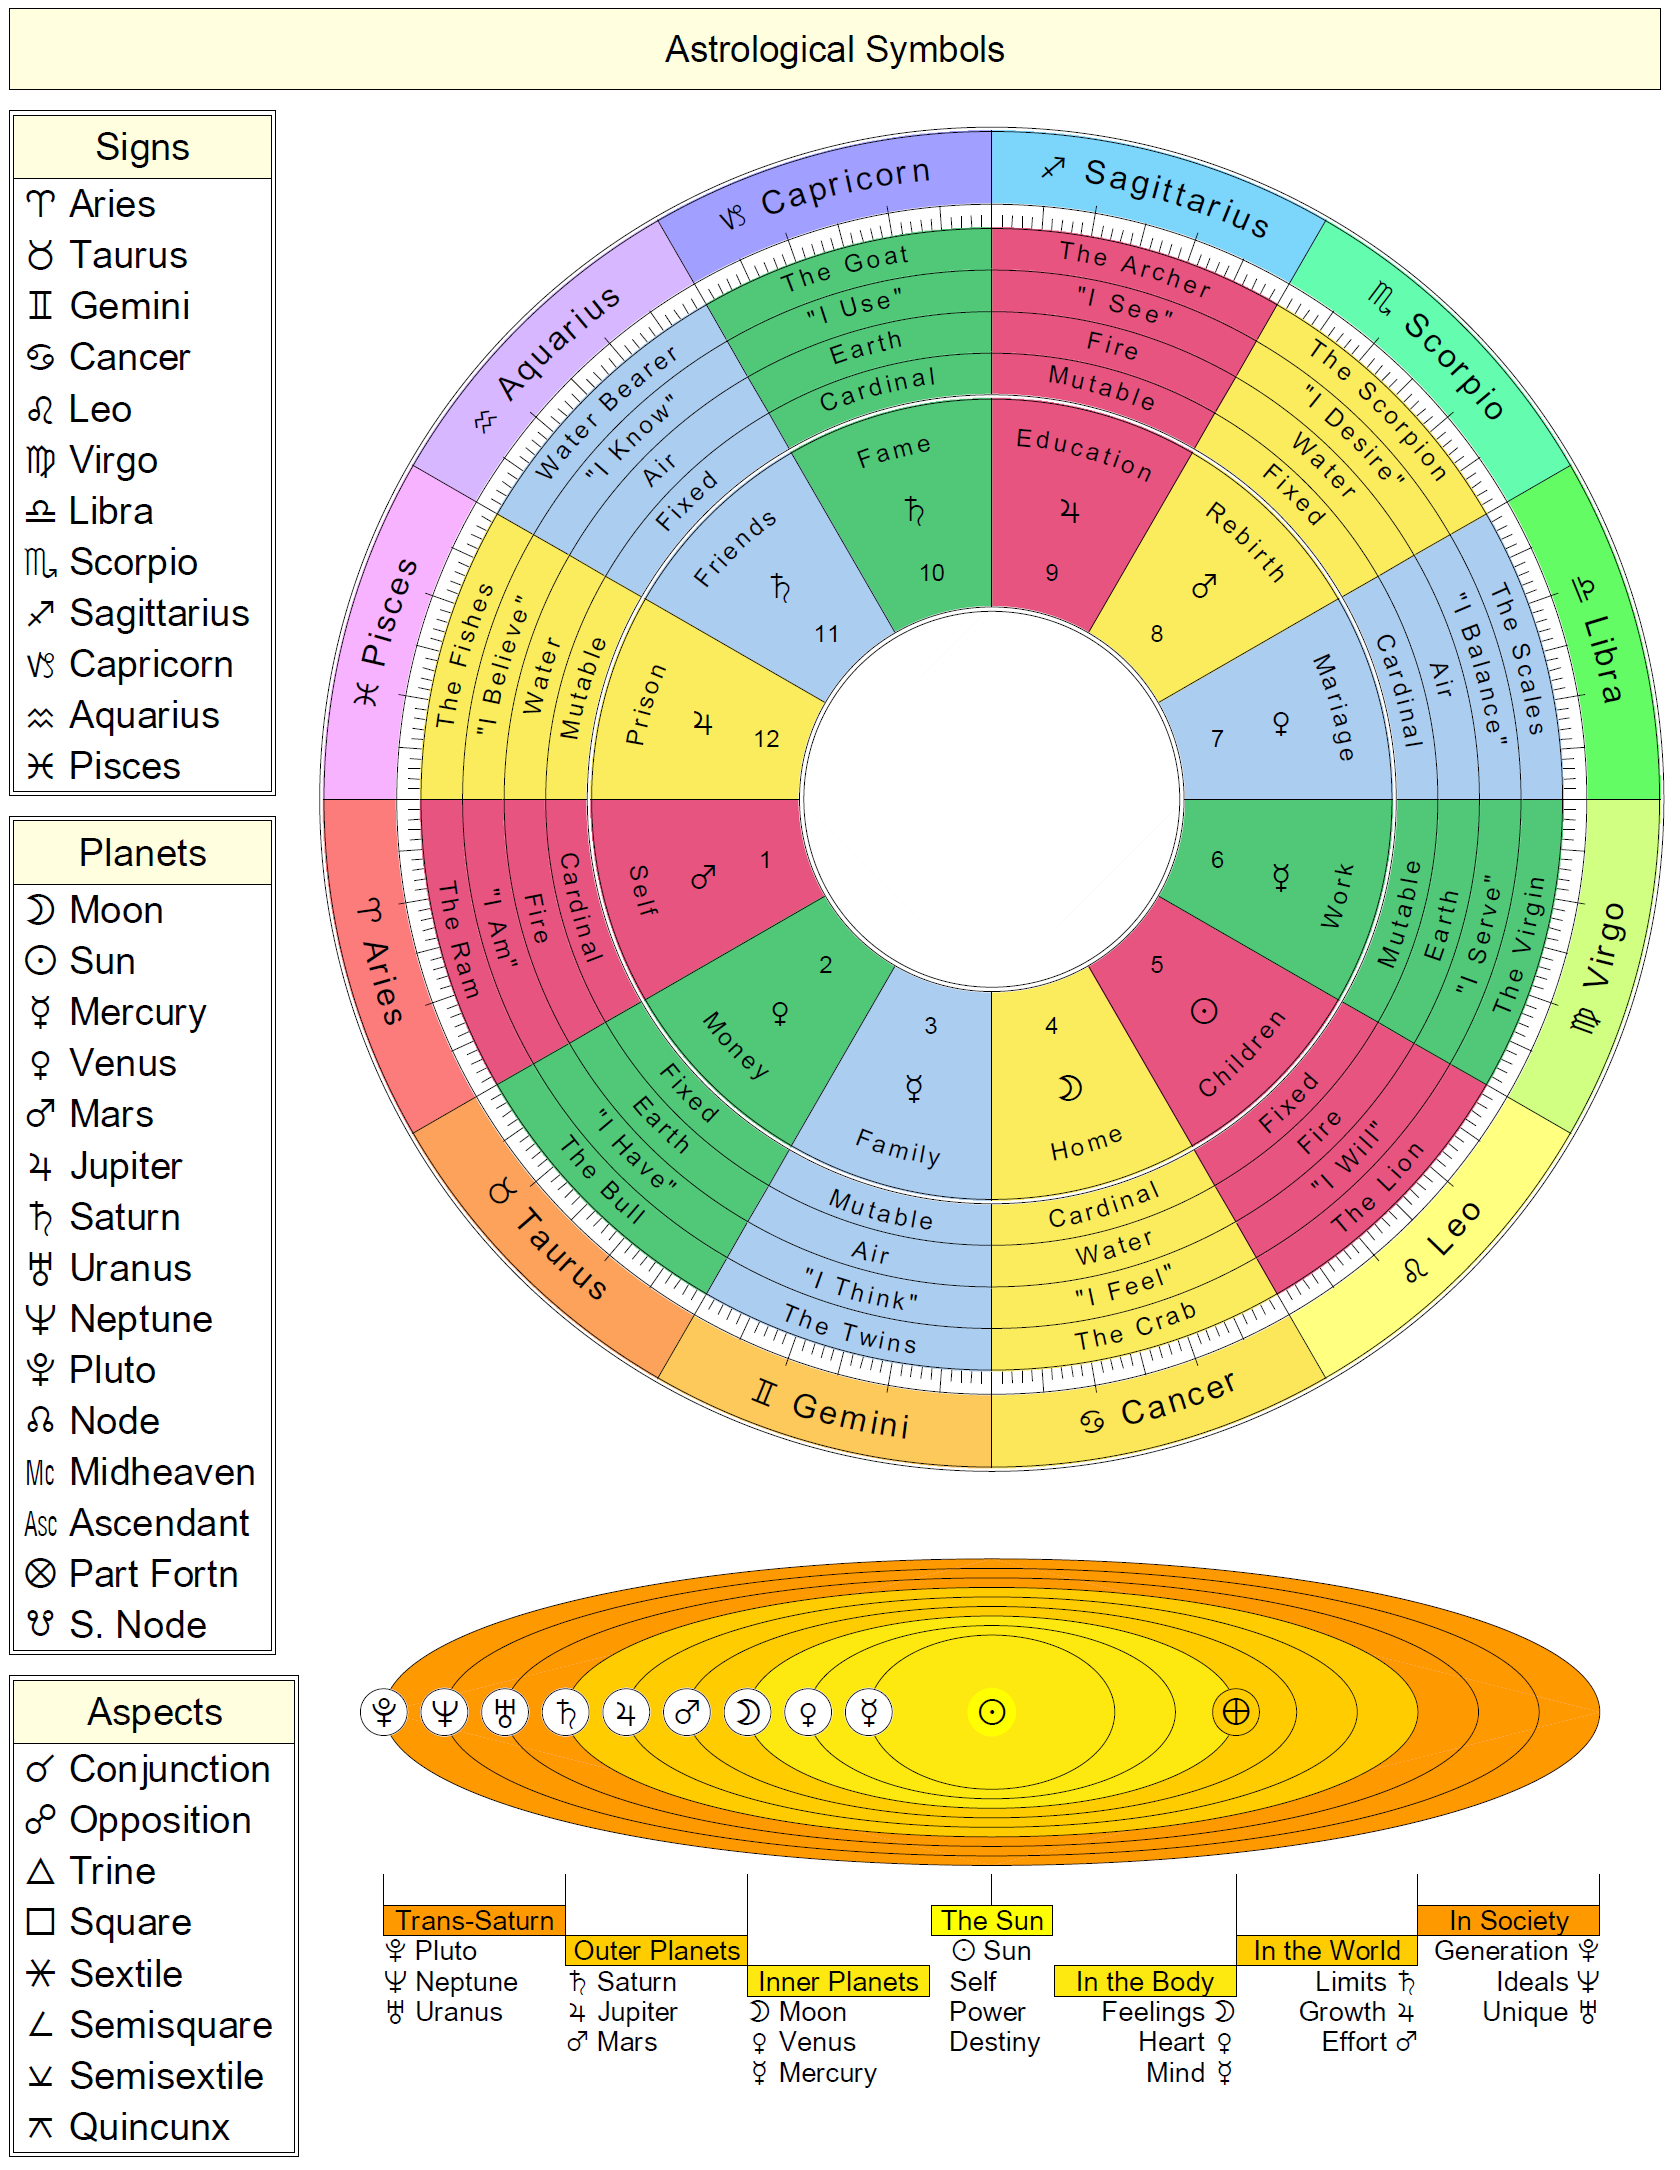 astrology elements